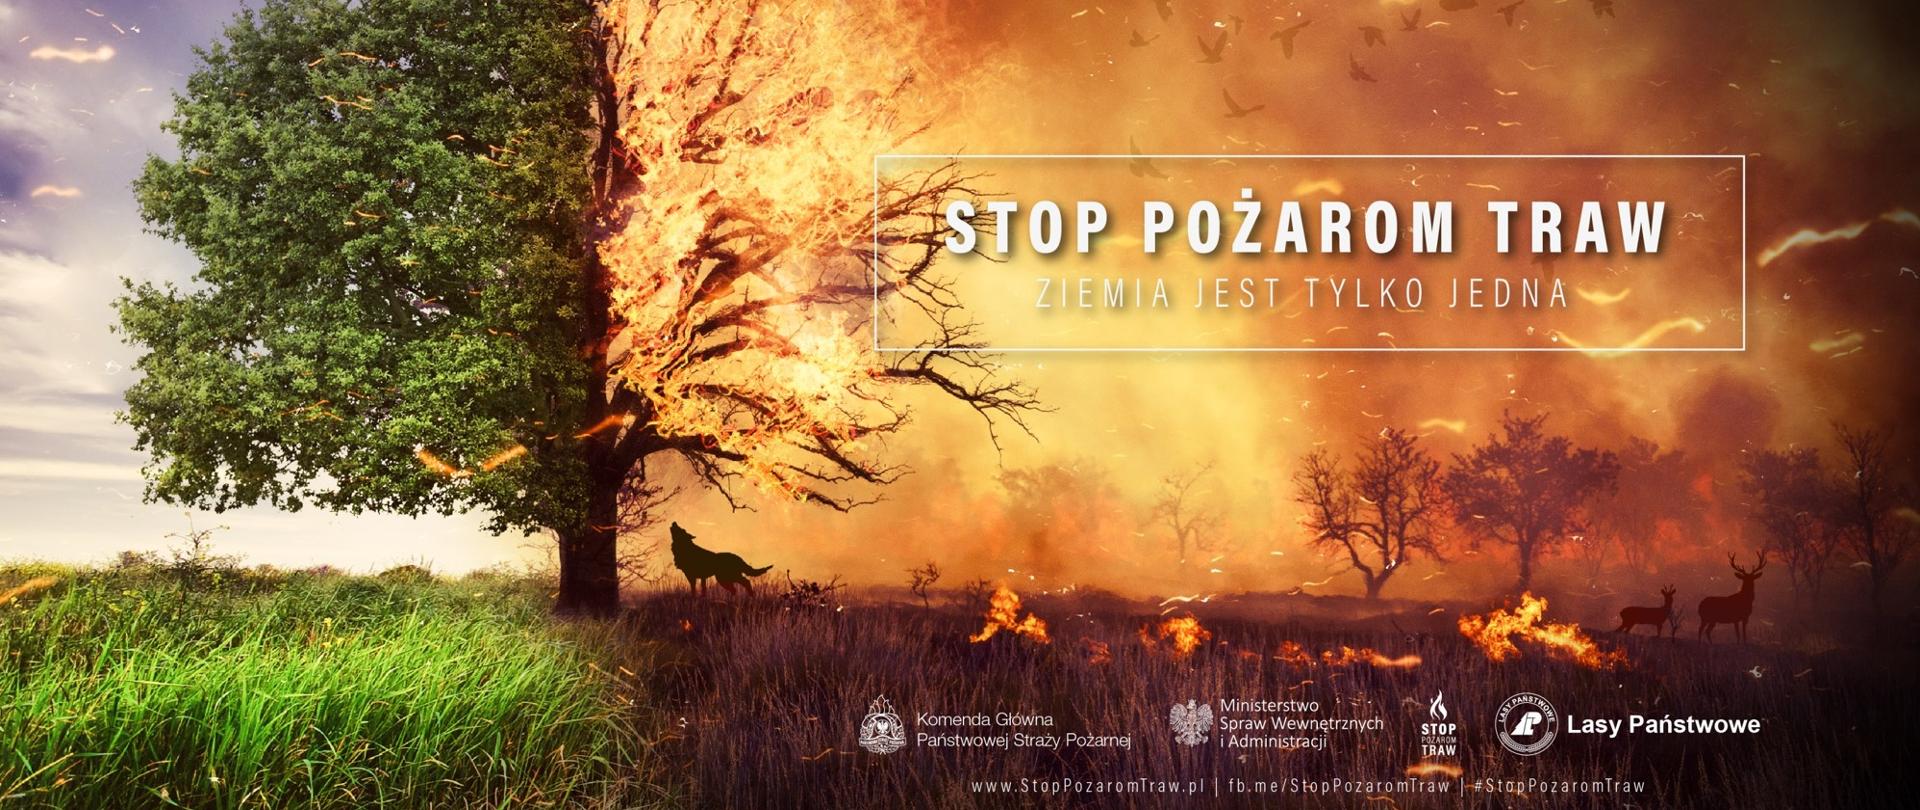 Plakat kampanii Stop pożarom traw przedstawiające palące się drzewo oraz zwierzęta.